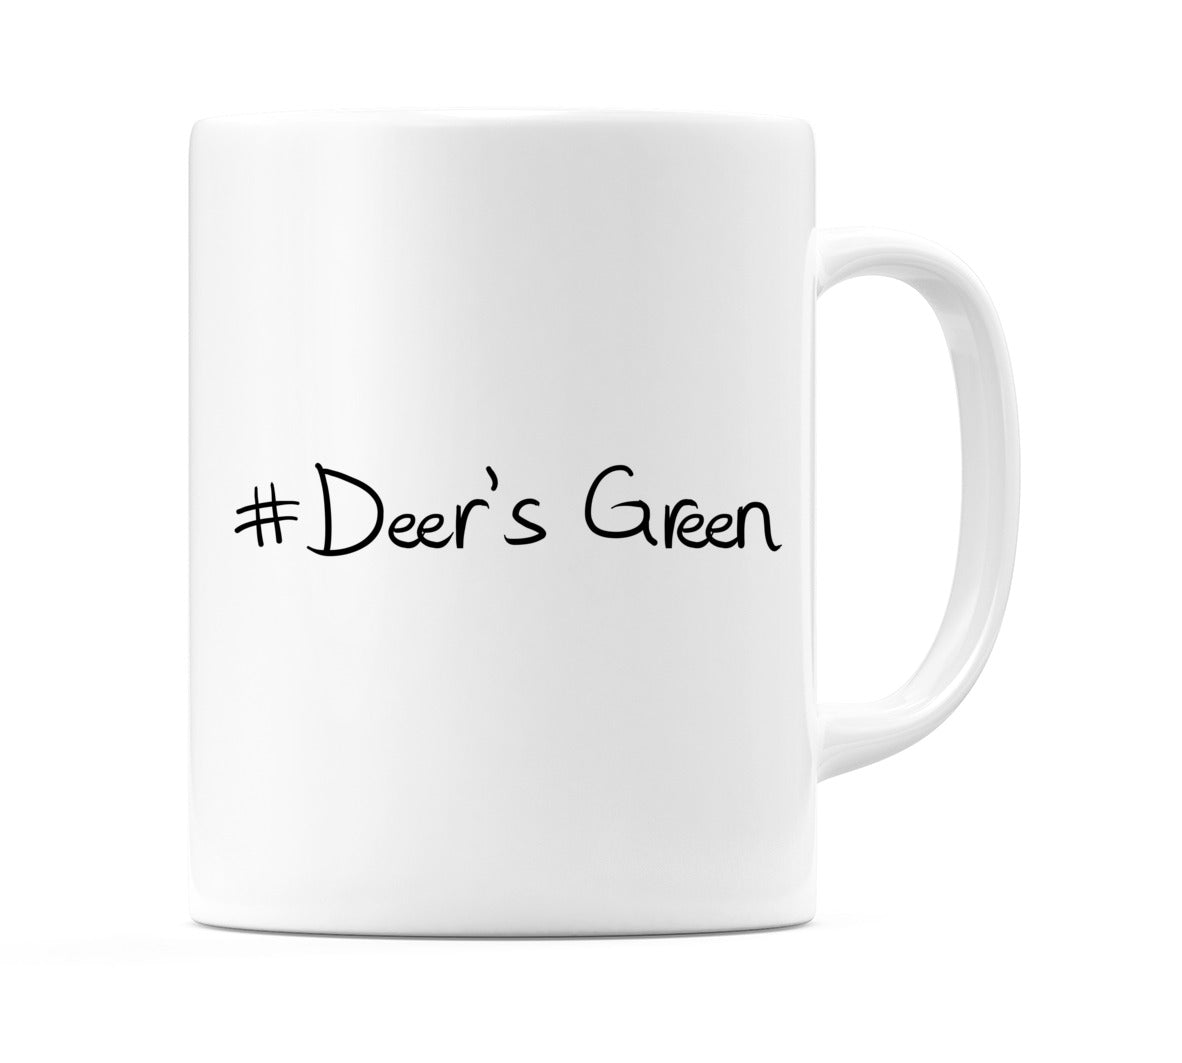 #Deer's Green Mug